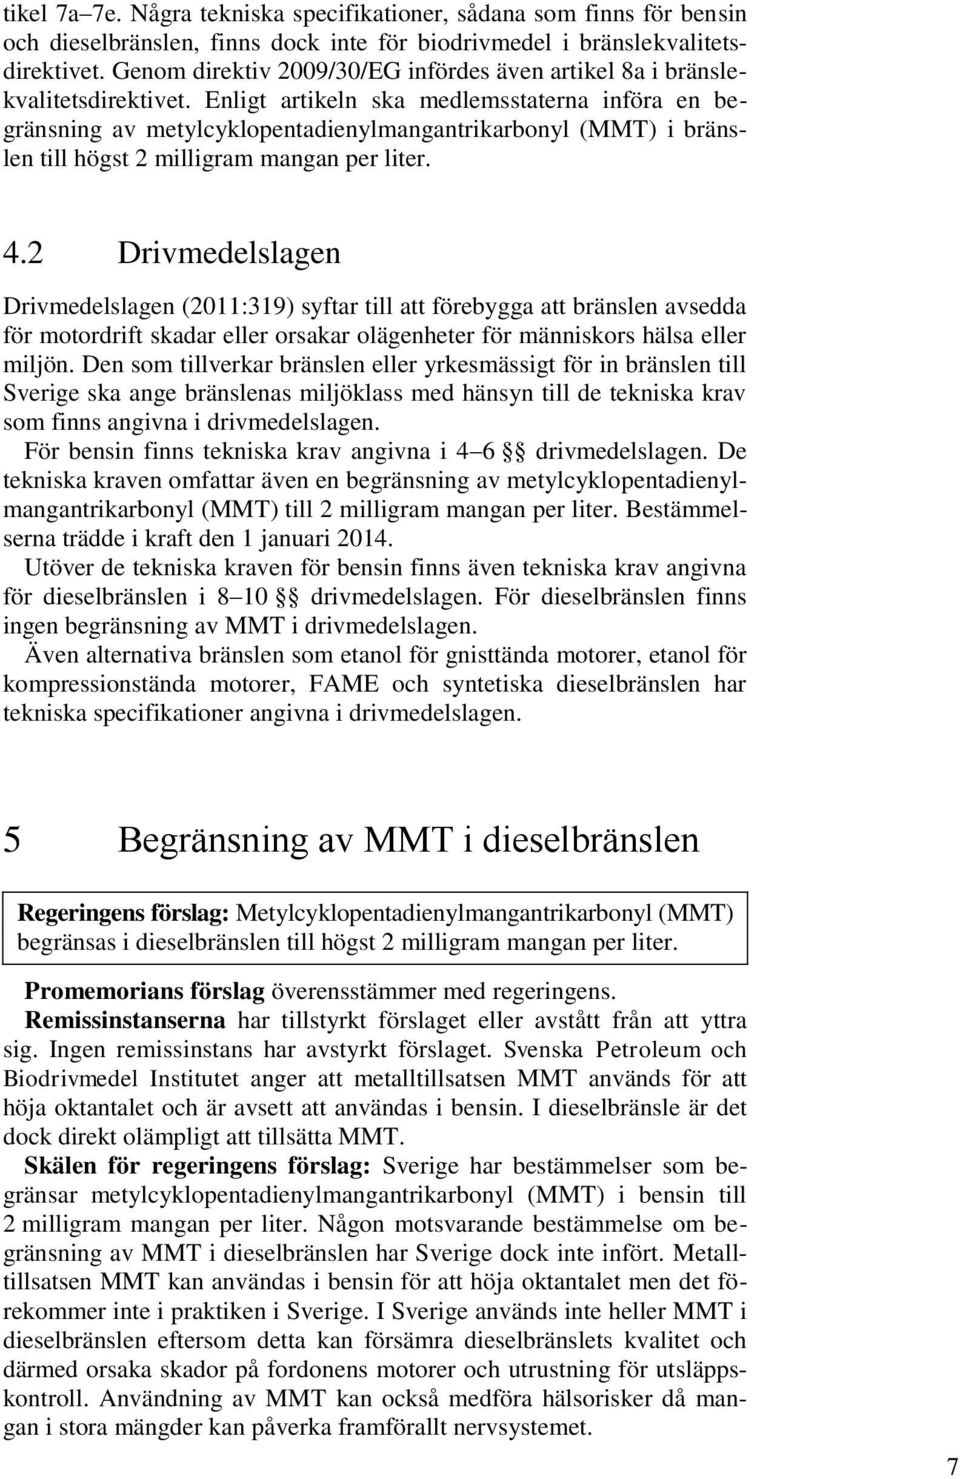 Enligt artikeln ska medlemsstaterna införa en begränsning av metylcyklopentadienylmangantrikarbonyl (MMT) i bränslen till högst 2 milligram mangan per liter. 4.